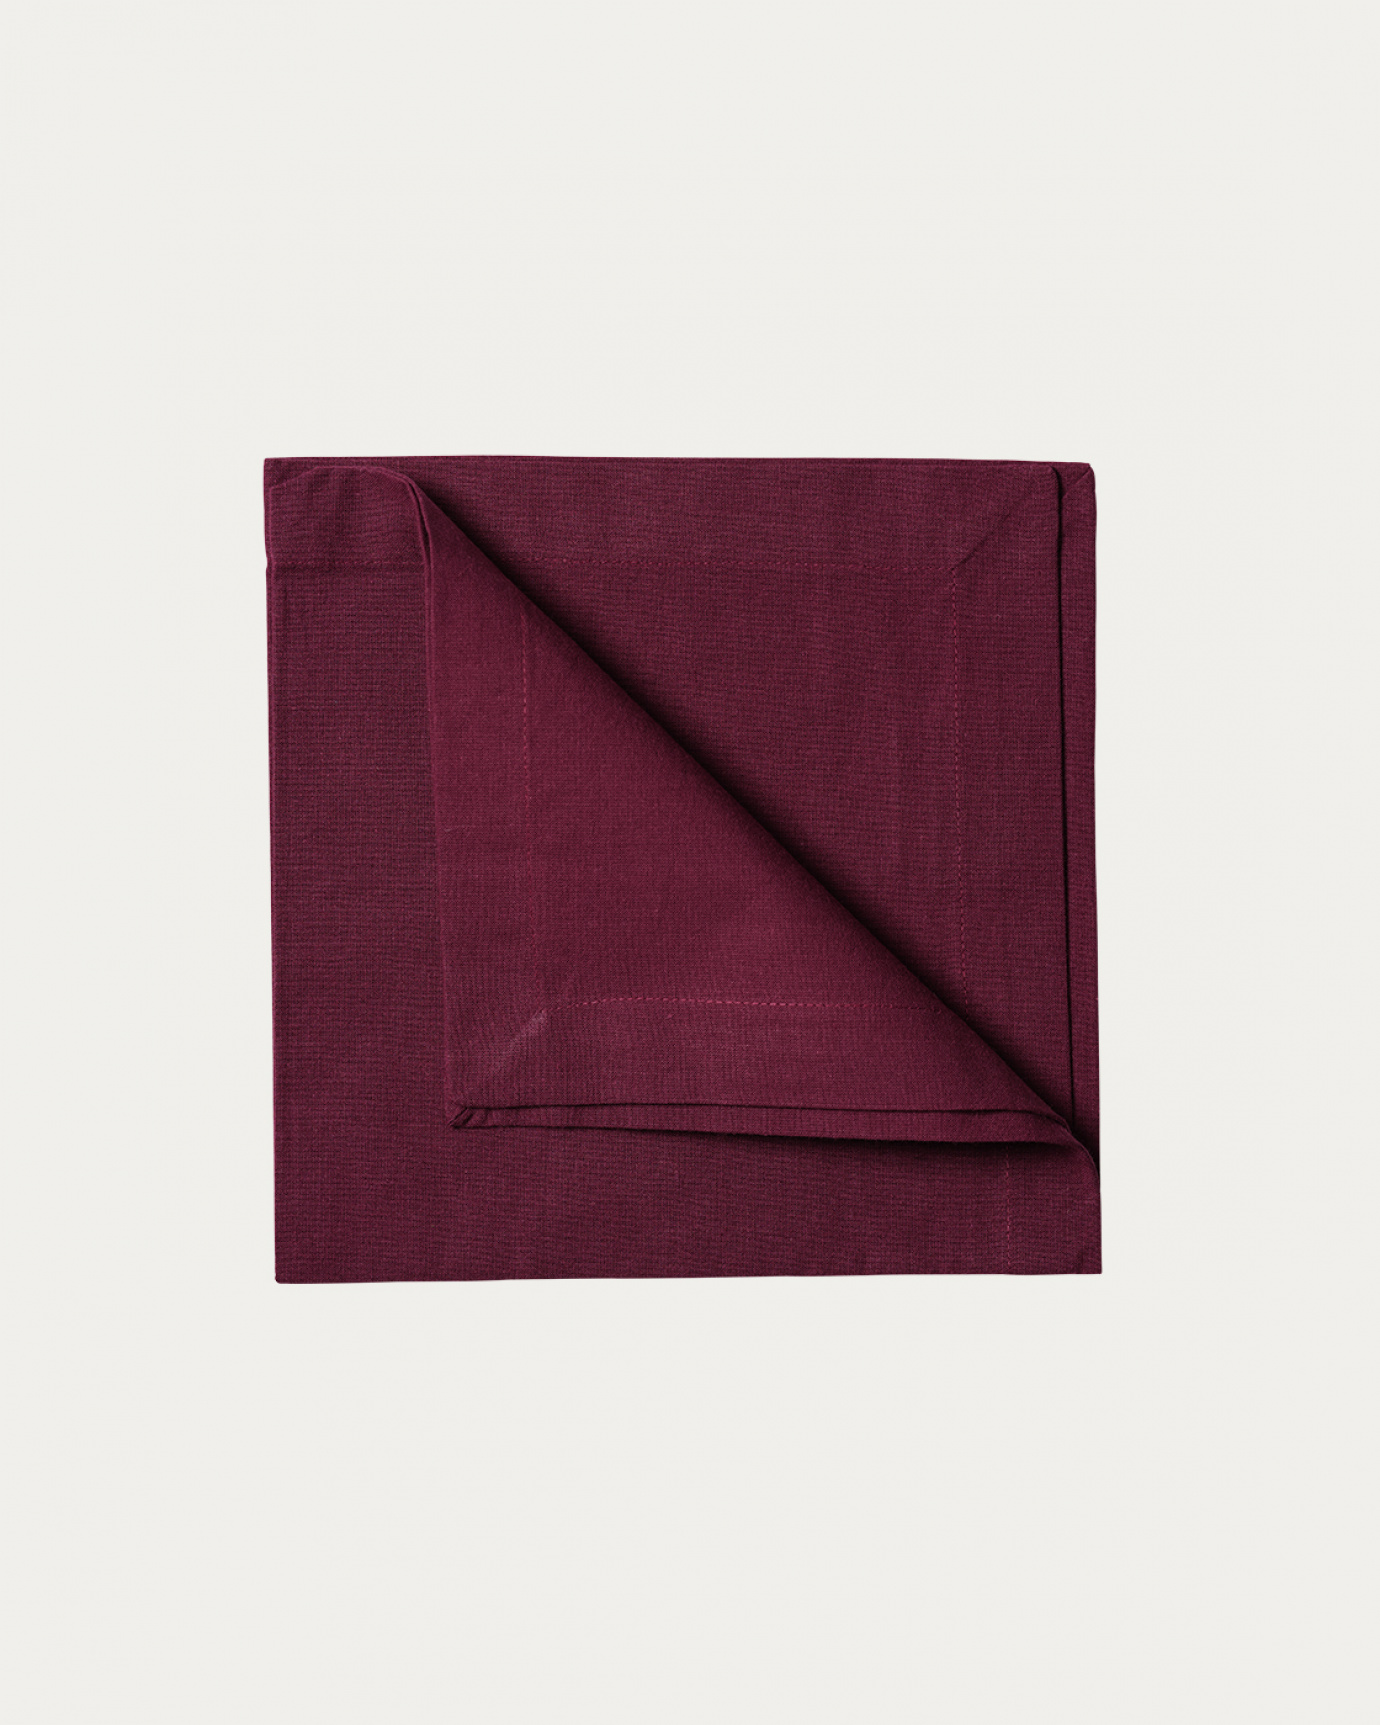 Immagine prodotto rosso borgogna ROBERT tovagliolo in morbido cotone di LINUM DESIGN. Dimensioni 45x45 cm e venduto in 4-pezzi.